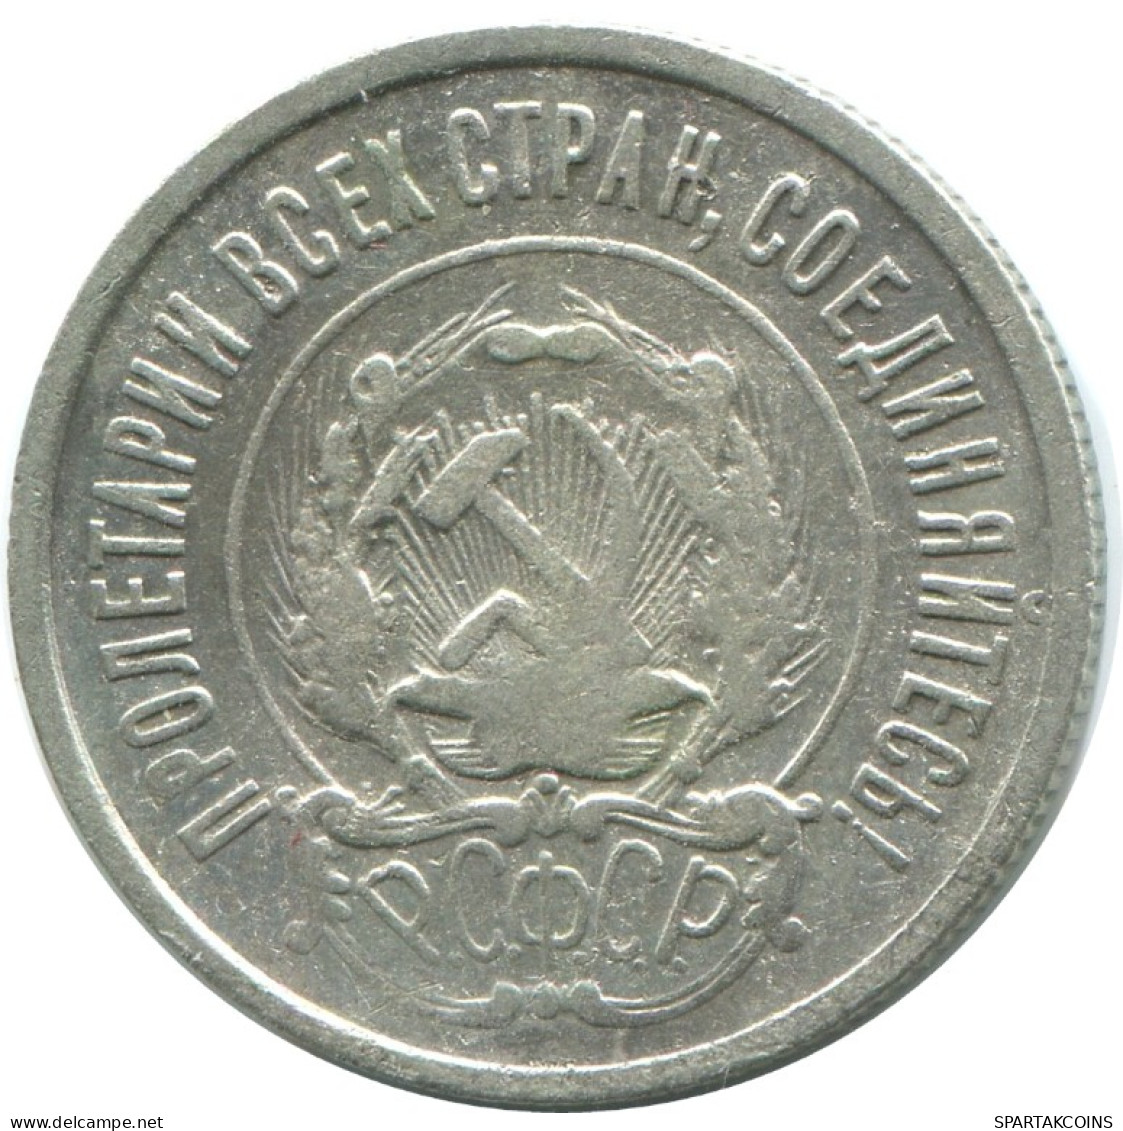 20 KOPEKS 1923 RUSSLAND RUSSIA RSFSR SILBER Münze HIGH GRADE #AF365.4.D.A - Russia